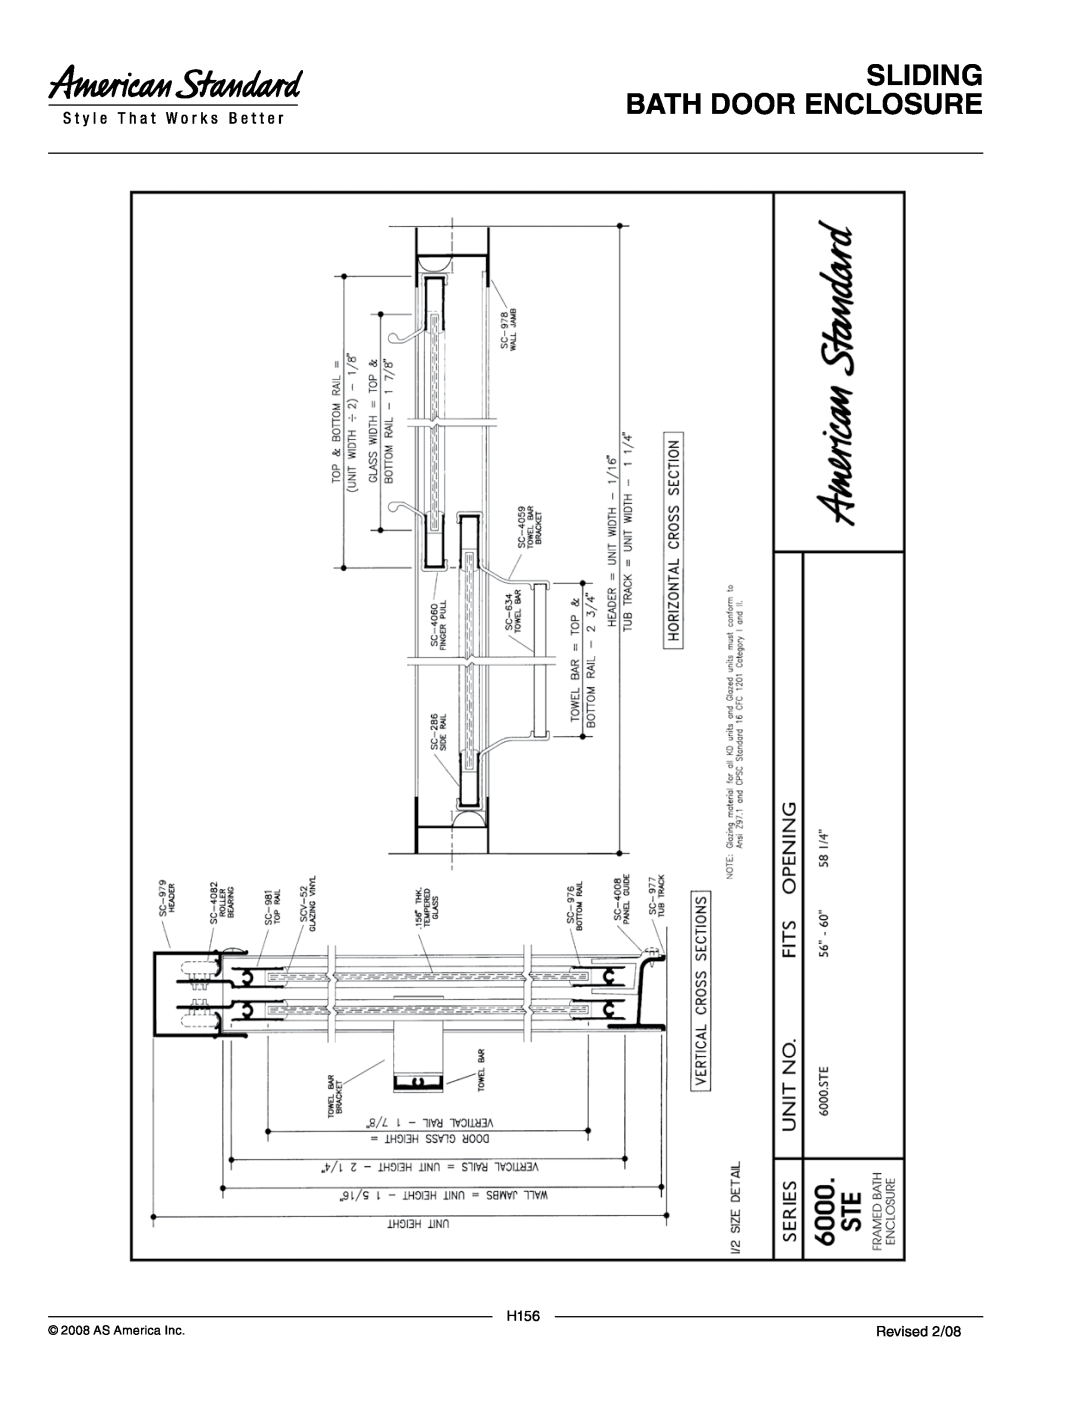 American Standard 6000.STE1, 6000.STE2 manual Sliding Bath Door Enclosure, H156, Revised 2/08, AS America Inc 